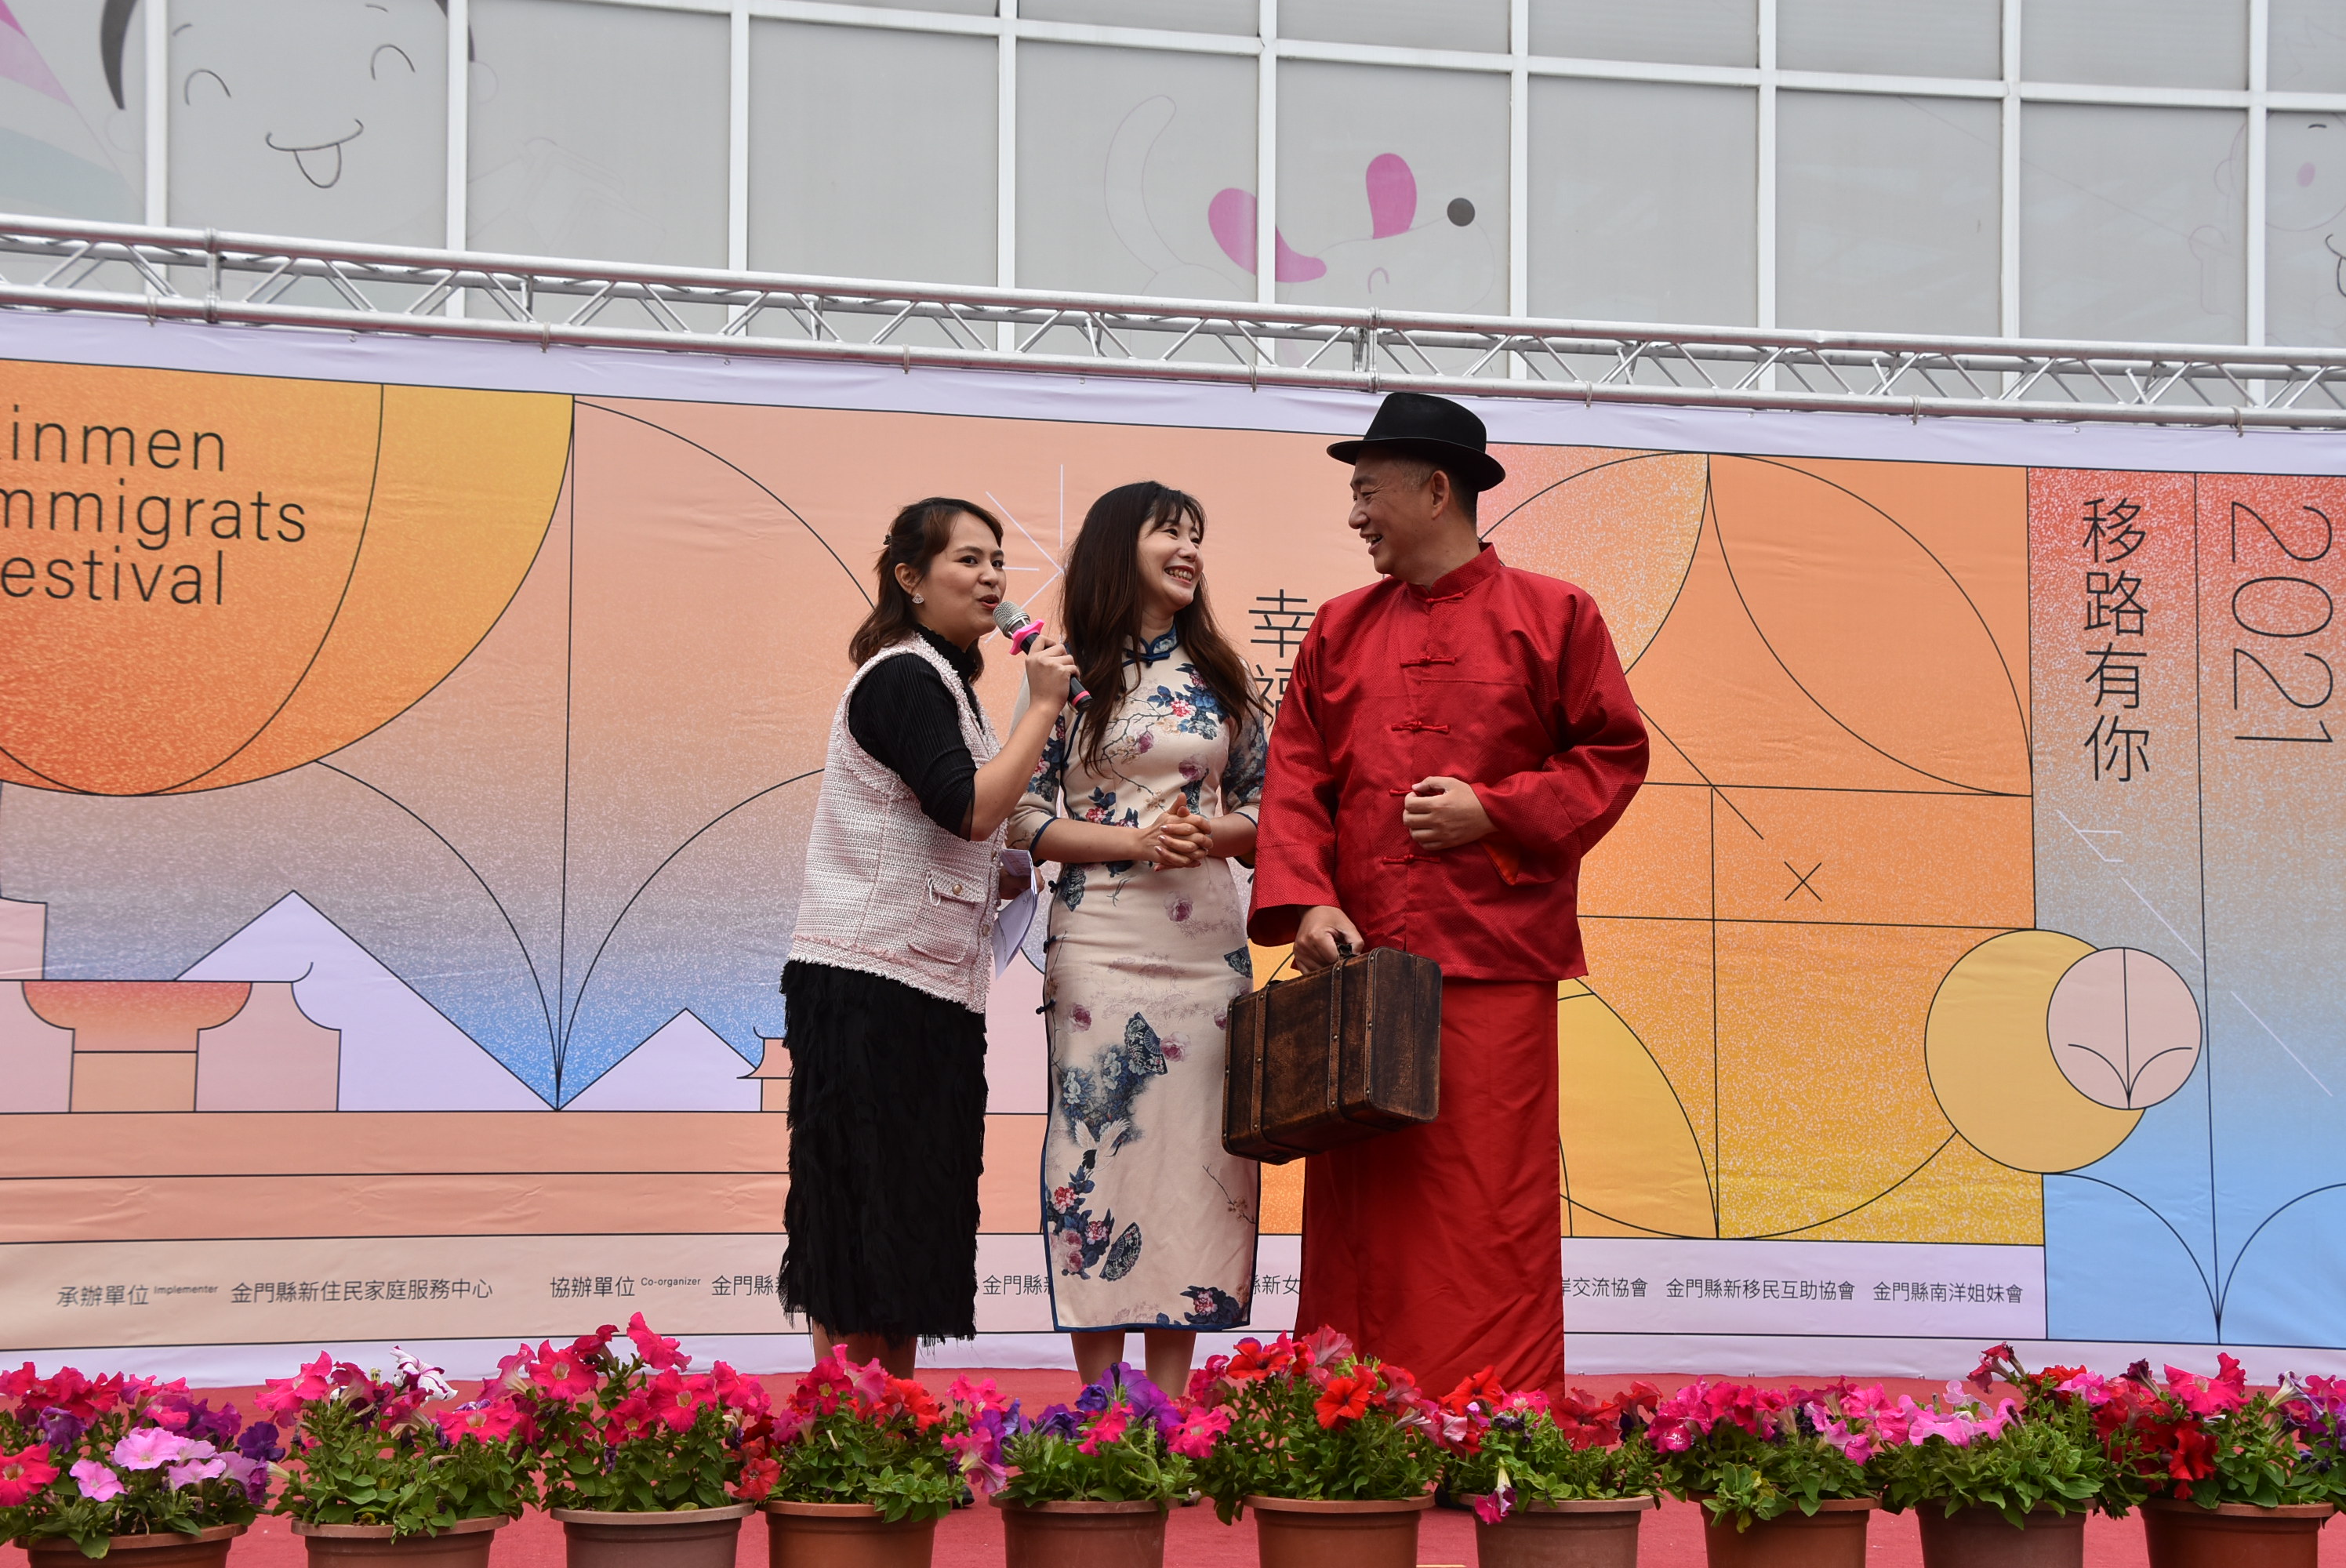 Sự kiện đã hòa trộn văn hóa truyền thống của Kim Môn với văn hóa của những di dân mới, cho thấy một bức tranh tươi đẹp mới về sự tôn trọng và khoan dung của các nhóm dân tộc khác nhau. (Nguồn ảnh: chính quyền huyện đảo Kim Môn)